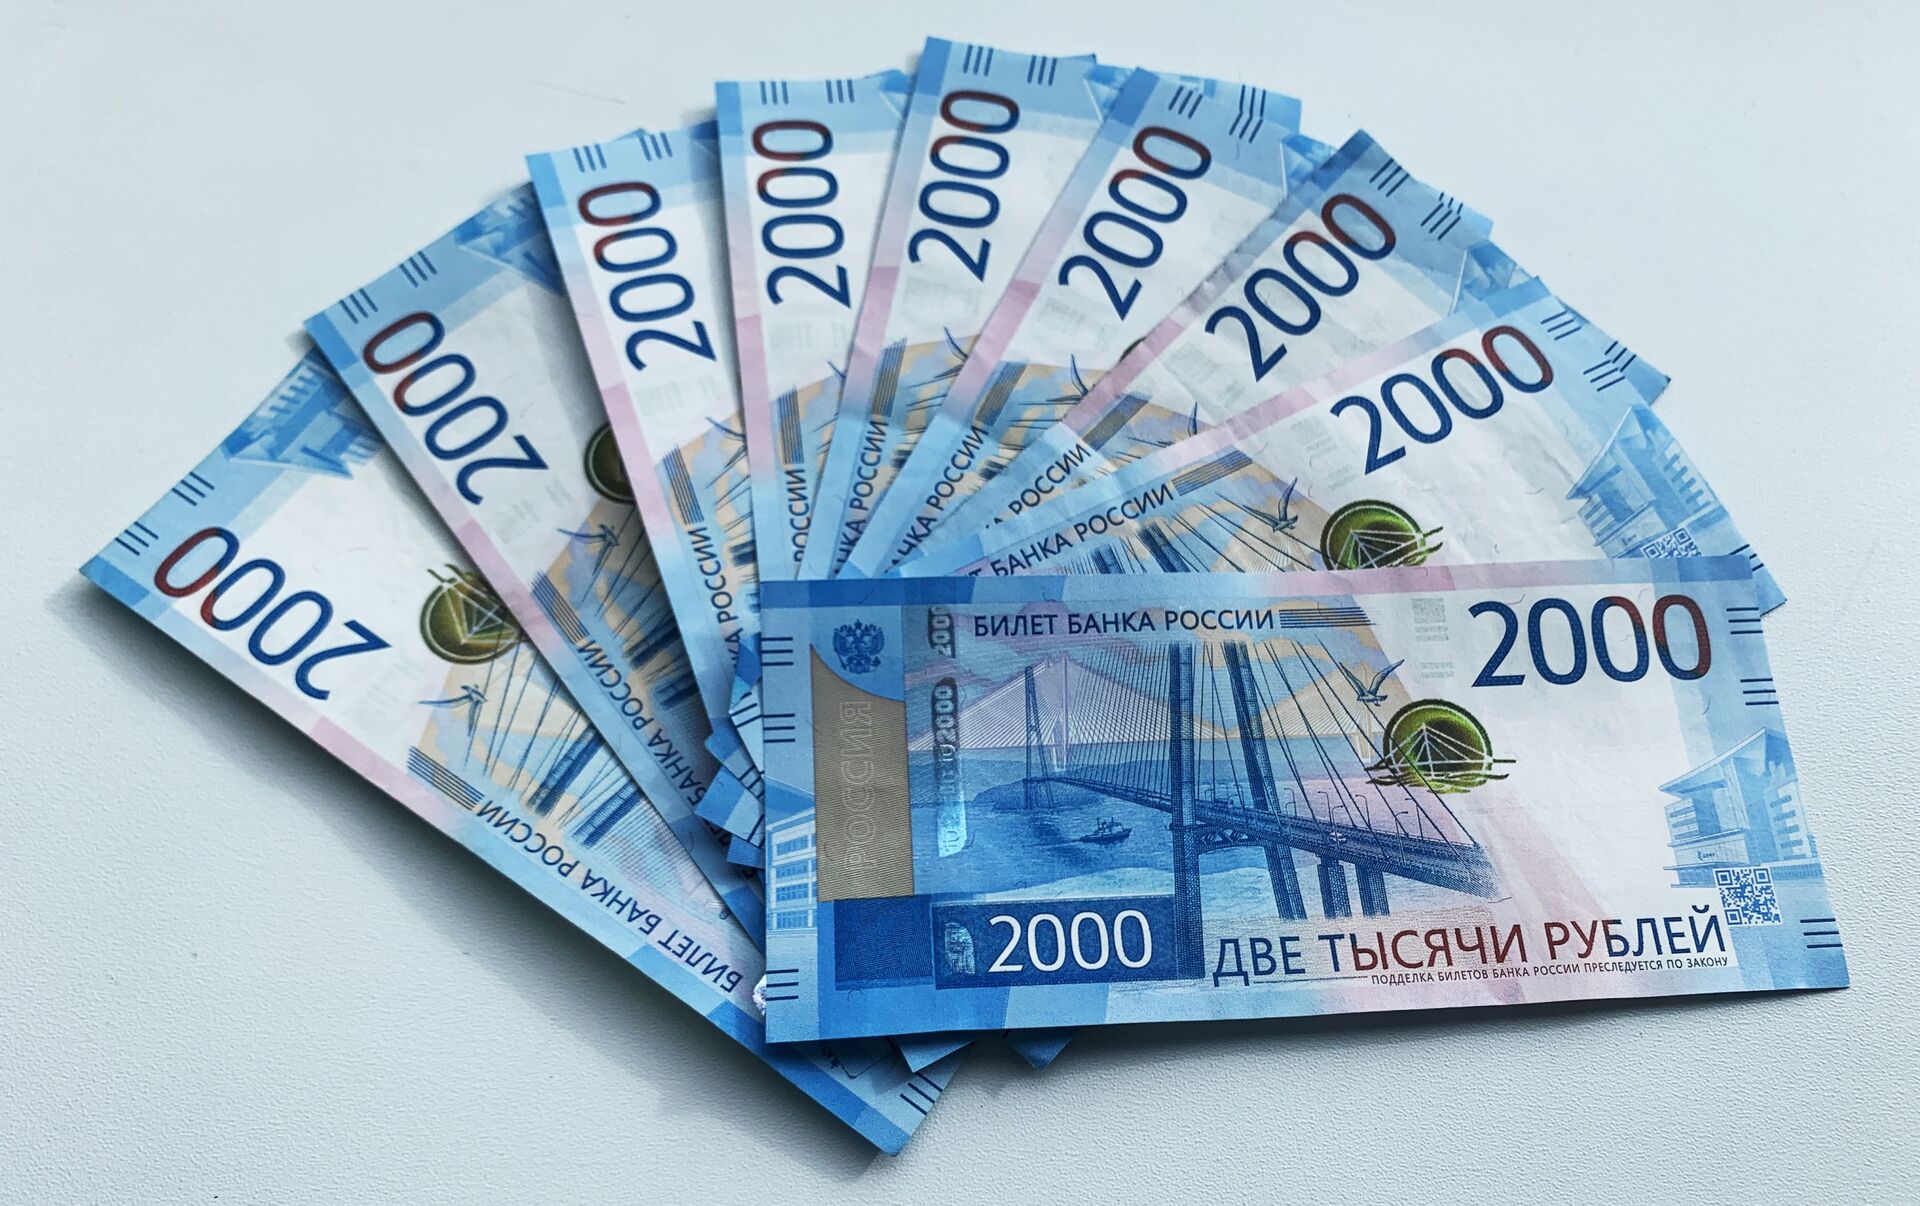 19 тысяч в январе. 2000 Евро деньги. 2000 Евро в рублях. Рубли. 2000 Евро банкнота.